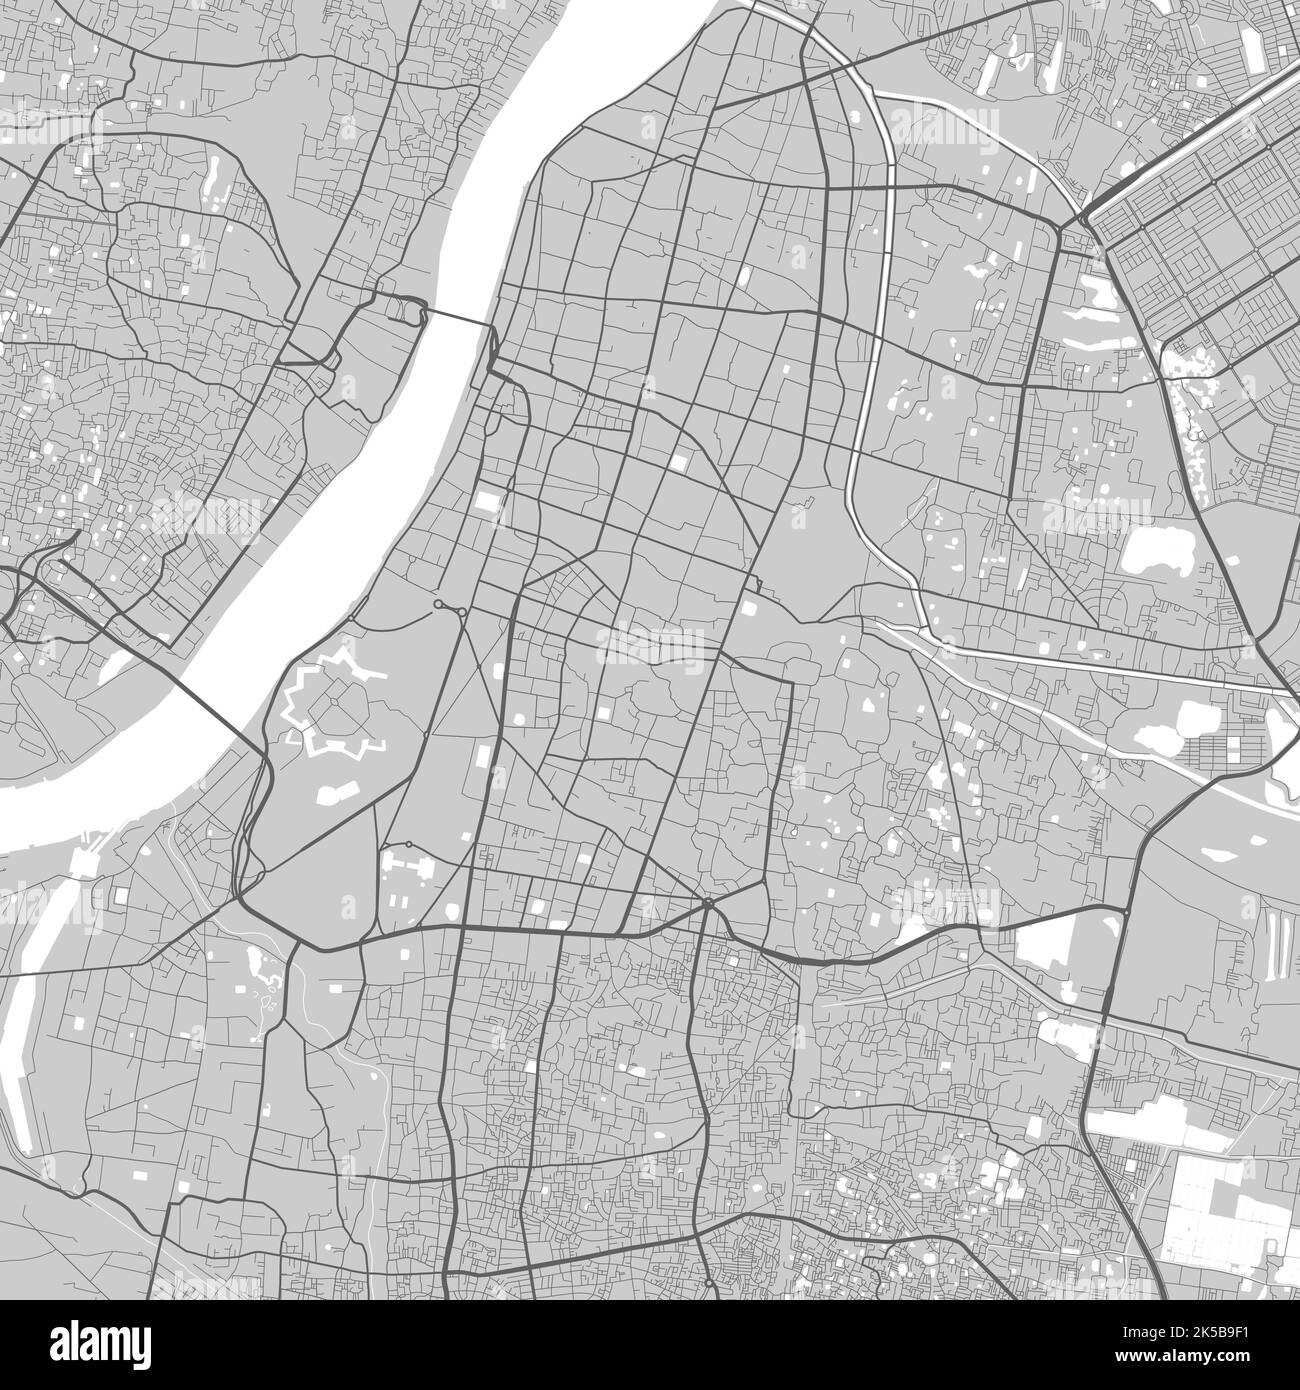 Mappa della città di Kolkata. Poster in bianco e nero urbano. Immagine della mappa stradale con vista dell'area metropolitana. Illustrazione Vettoriale